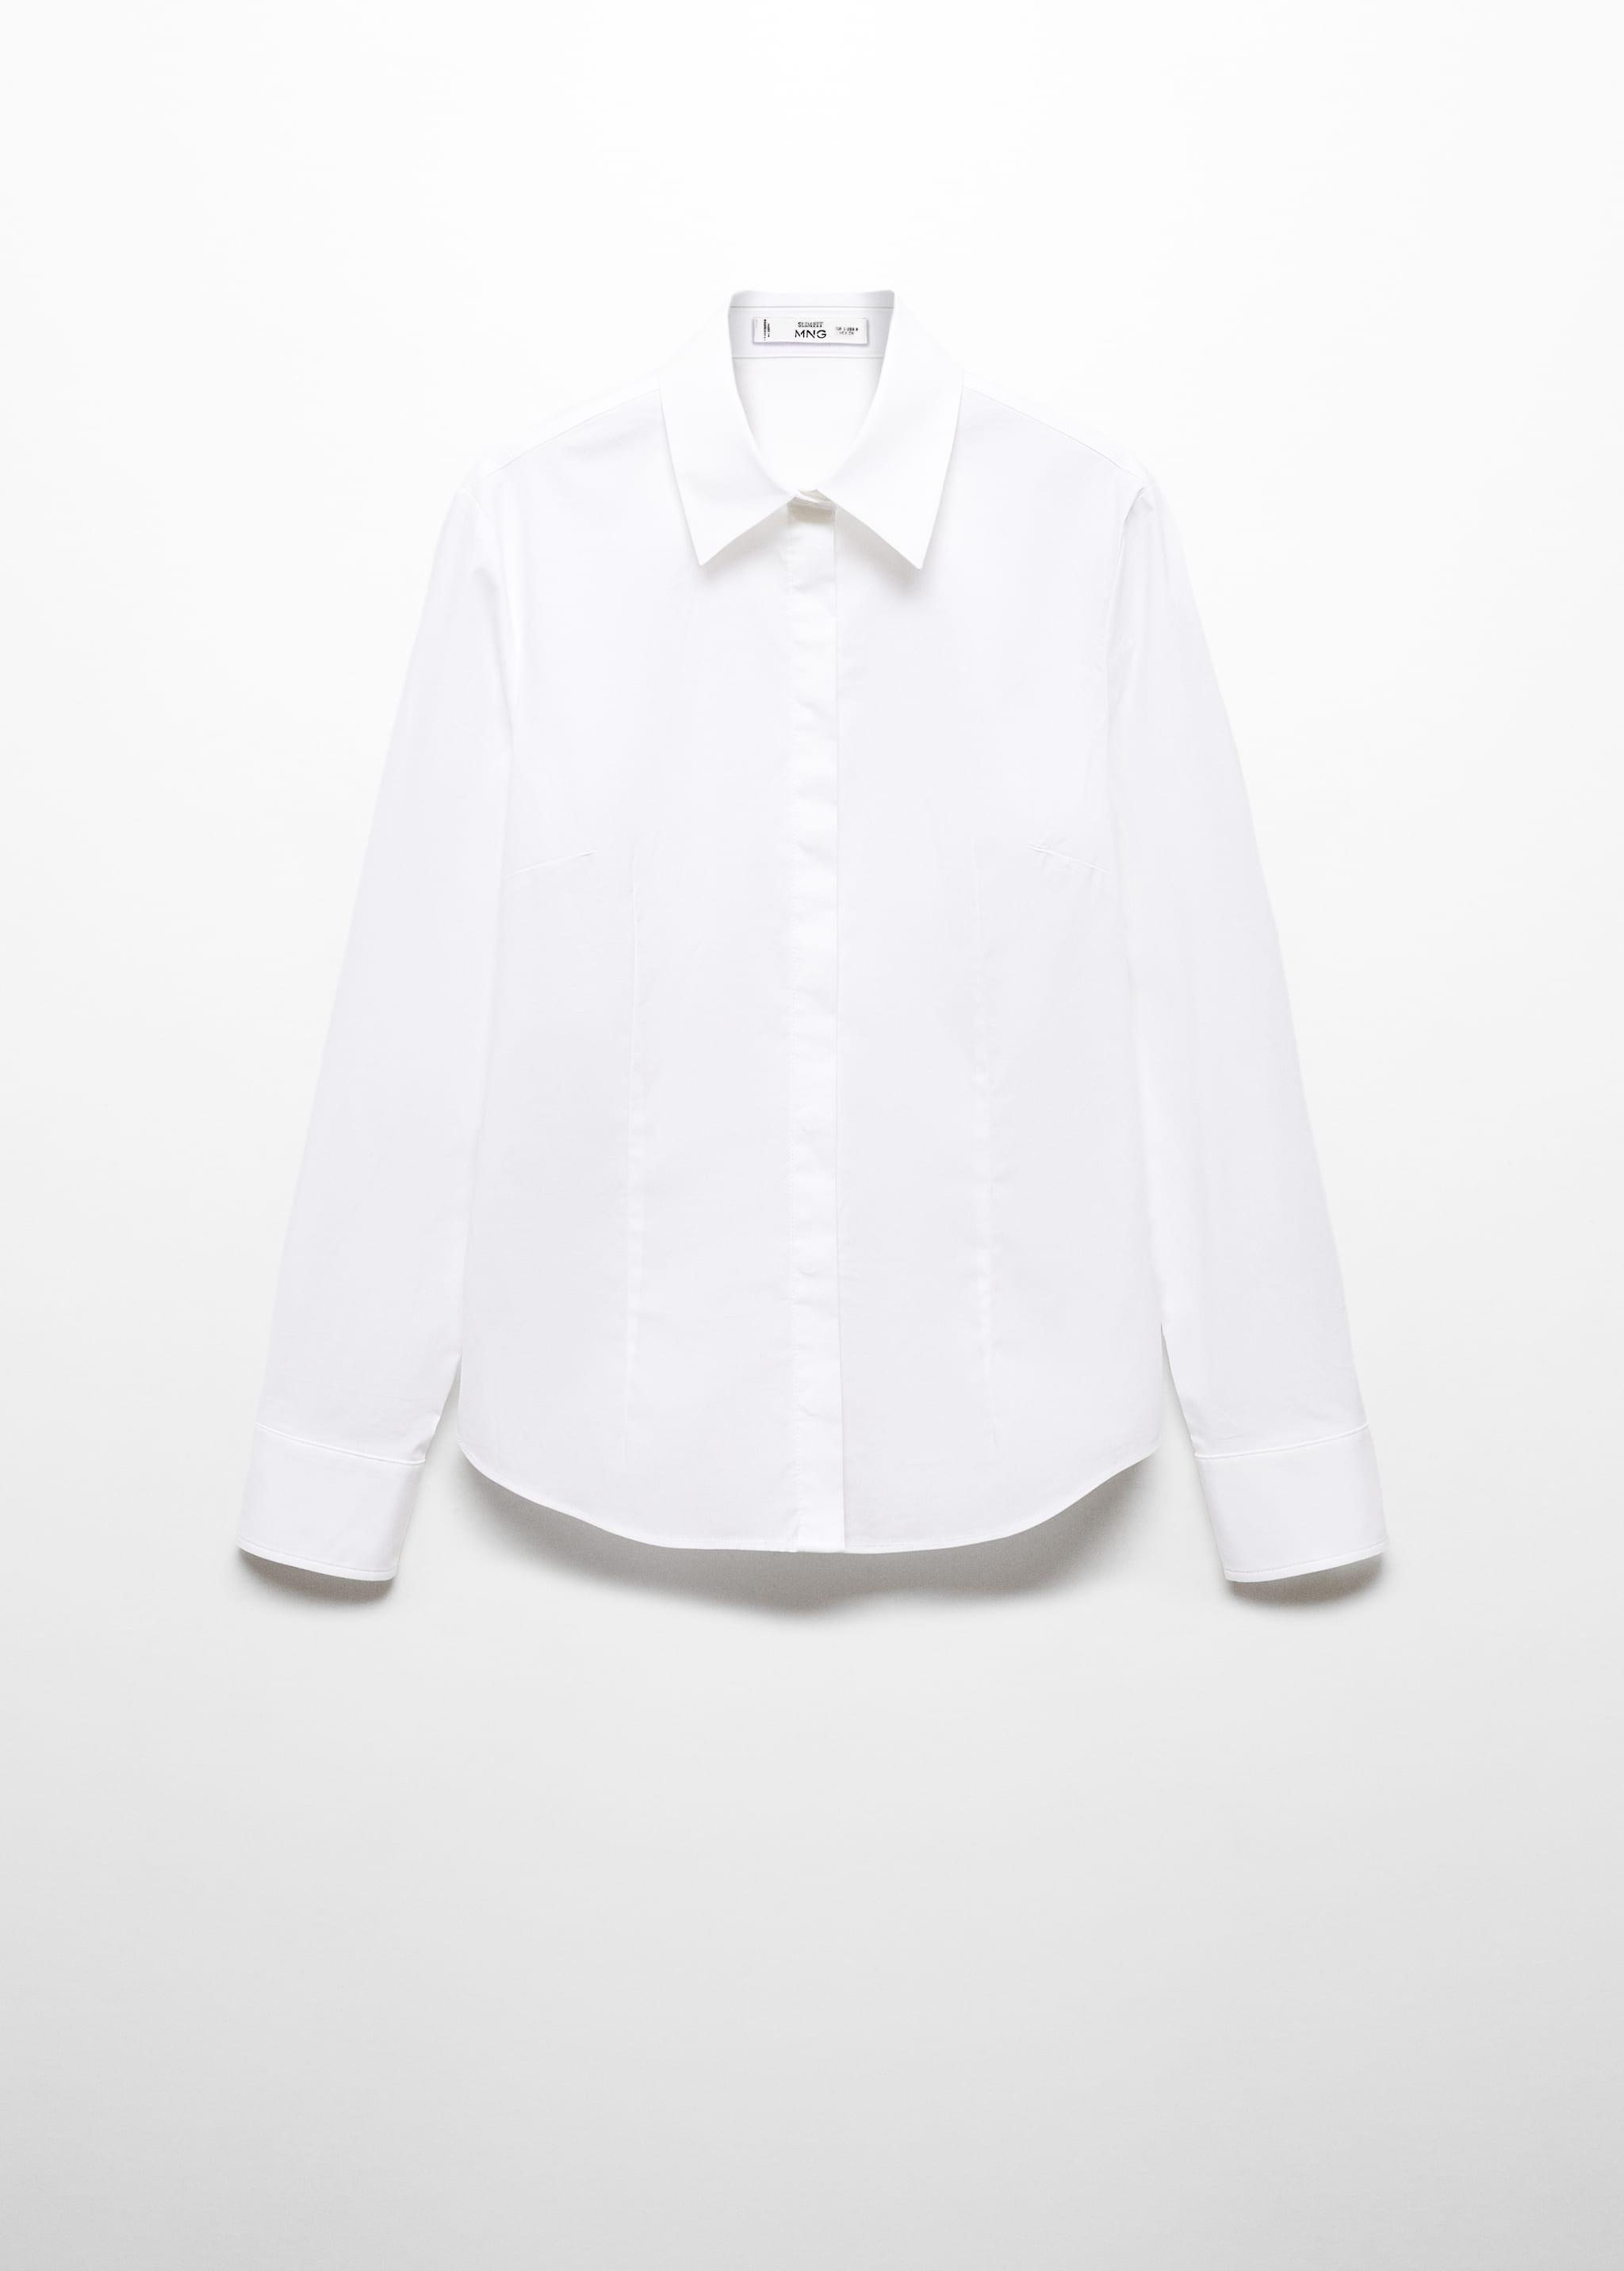 Camisa entallada algodón - Artículo sin modelo